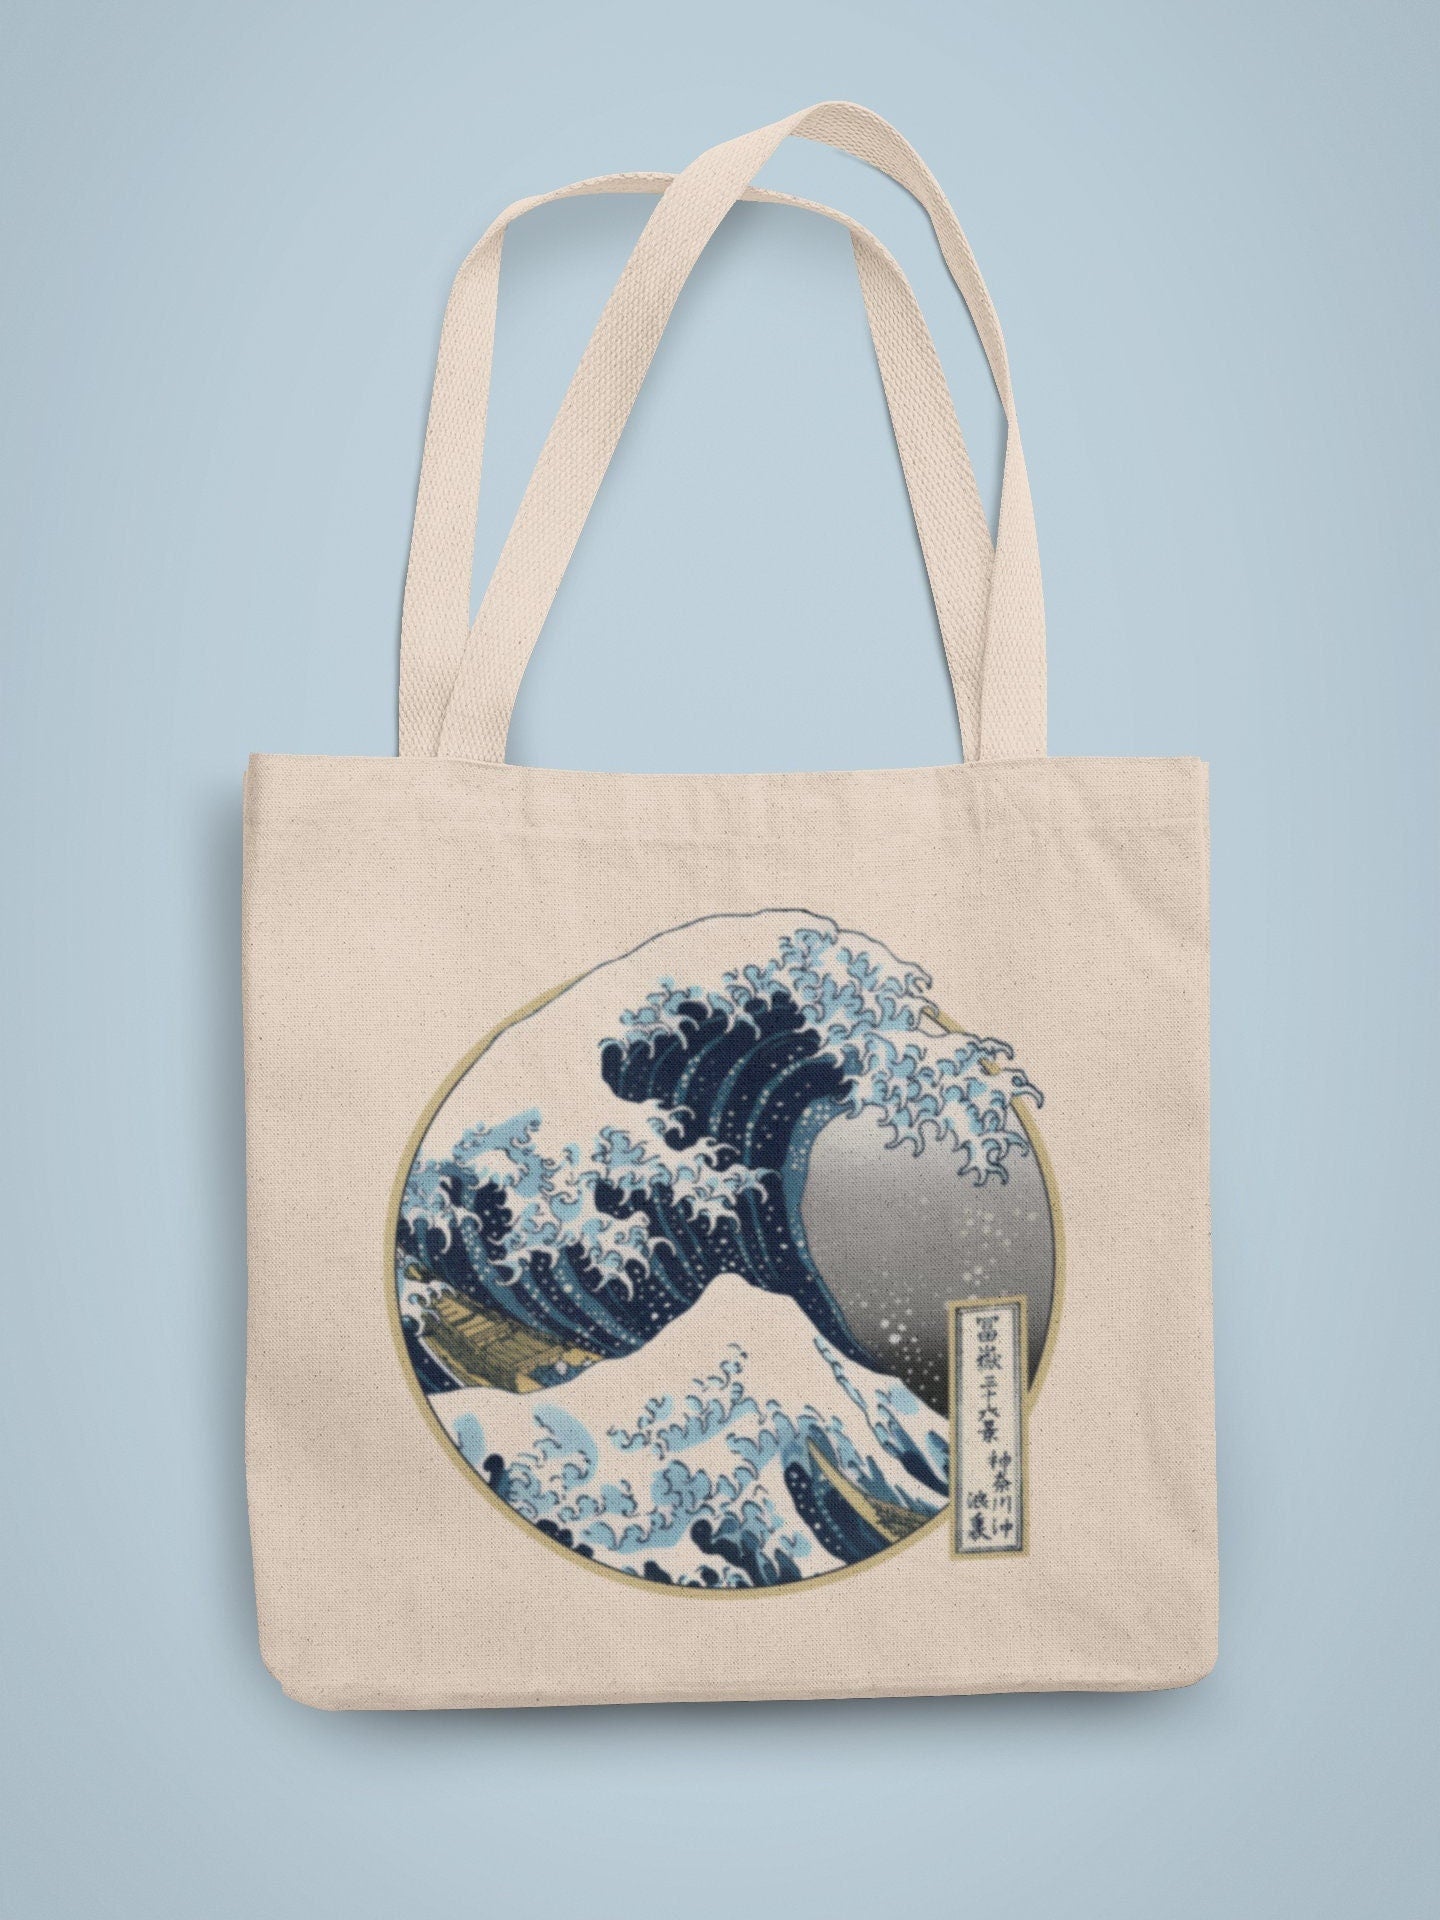 HOKUSAI - The Great Wave Tote Bag - Pathos Studio - Tote Bags